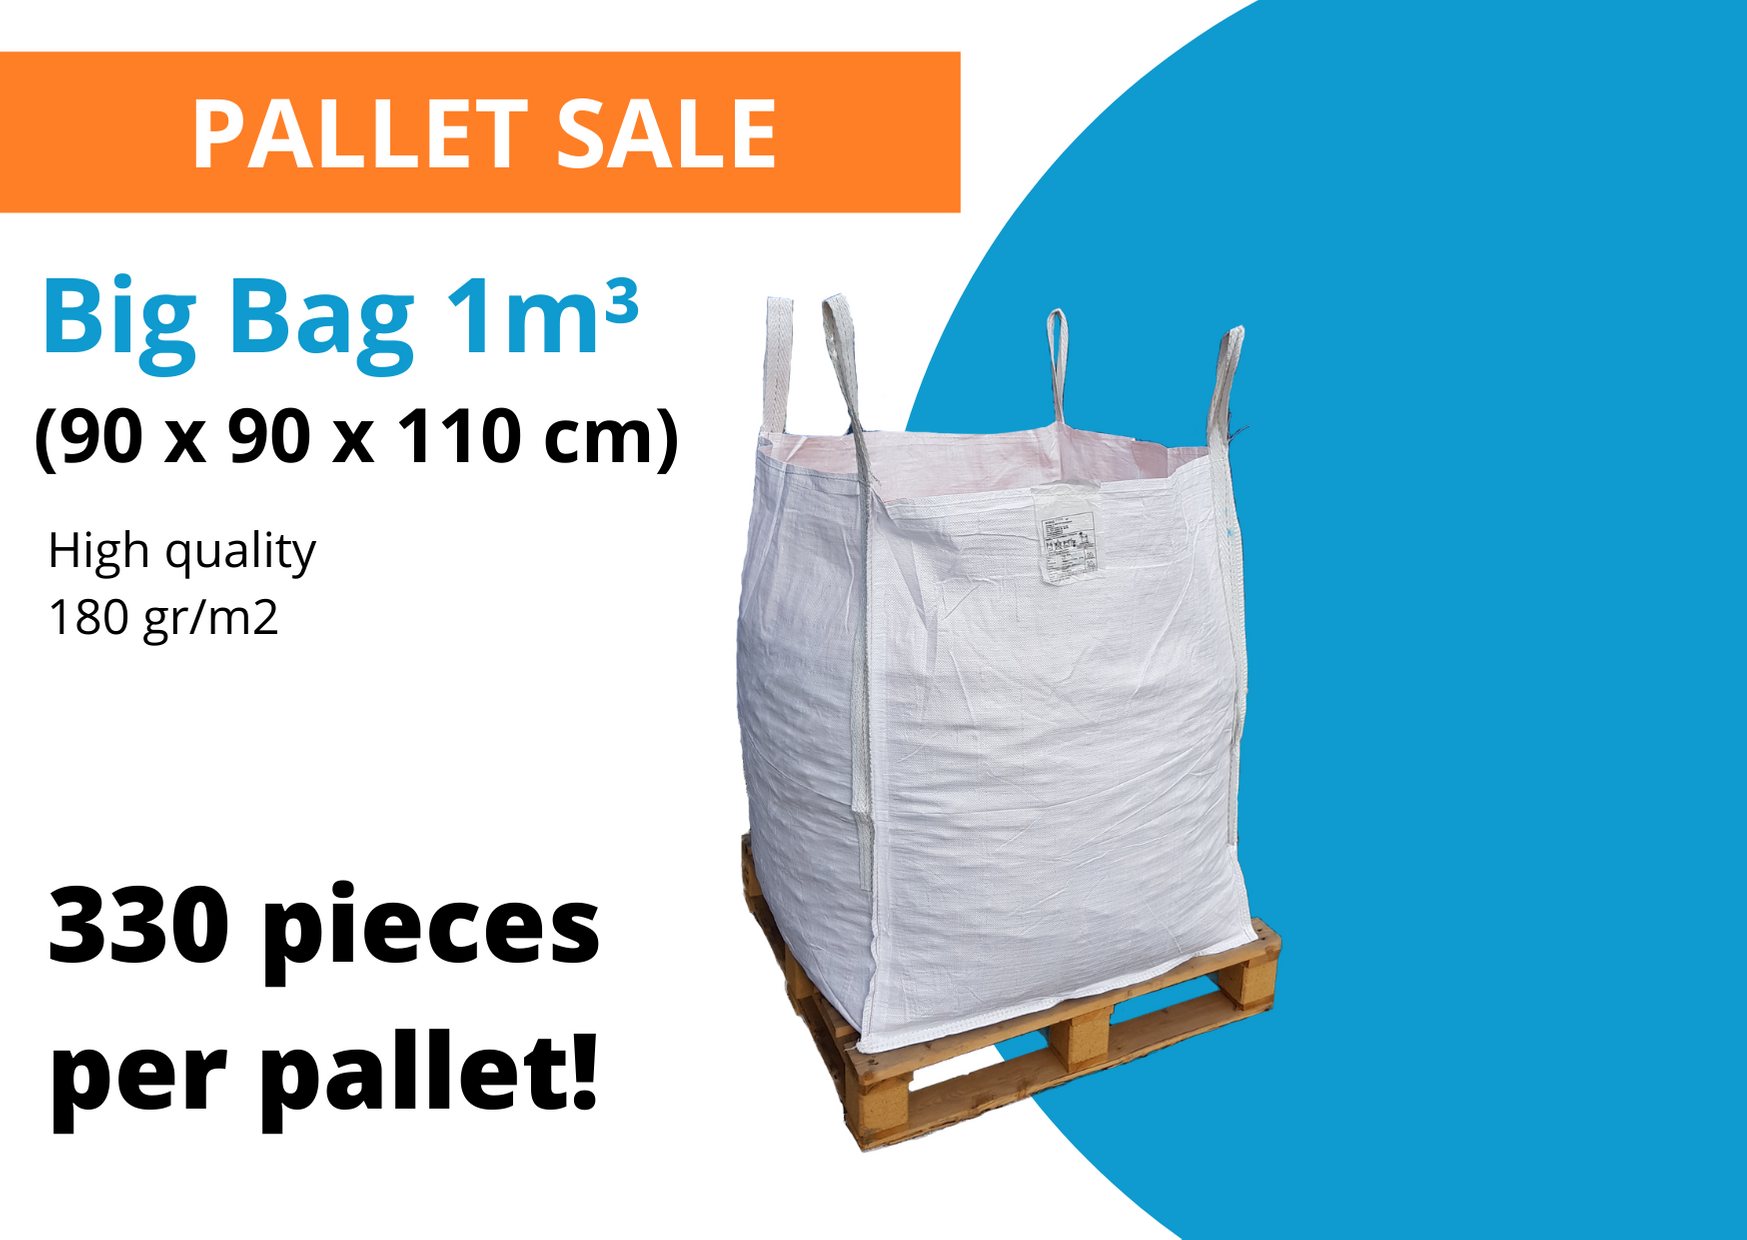 Big Bag 1m3 pallet sale